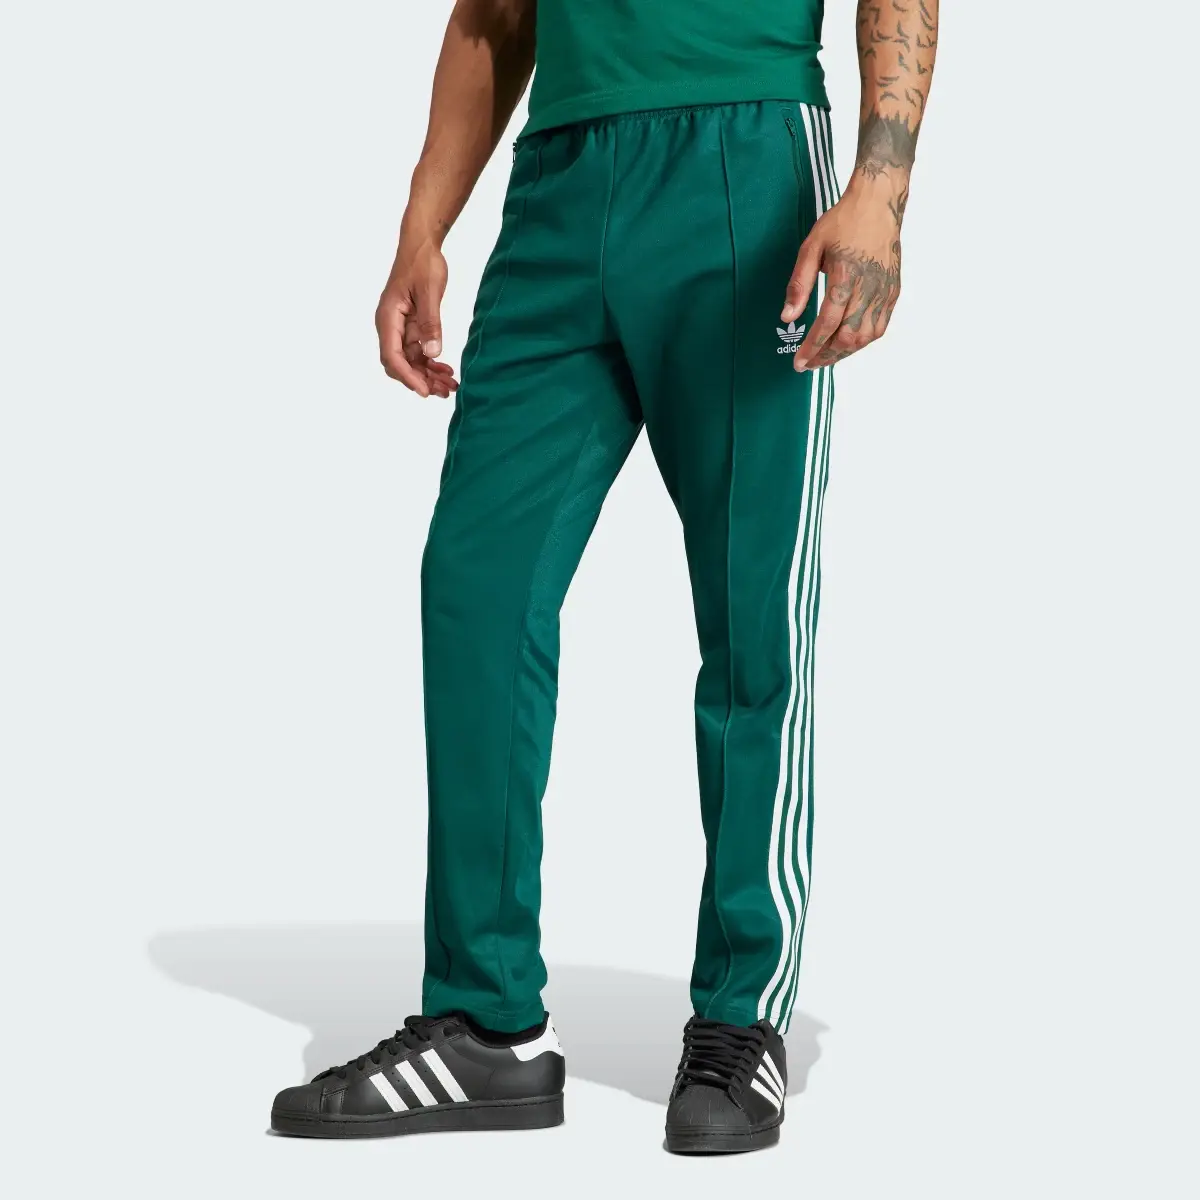 Adidas Spodnie dresowe Adicolor Classics Beckenbauer. 1